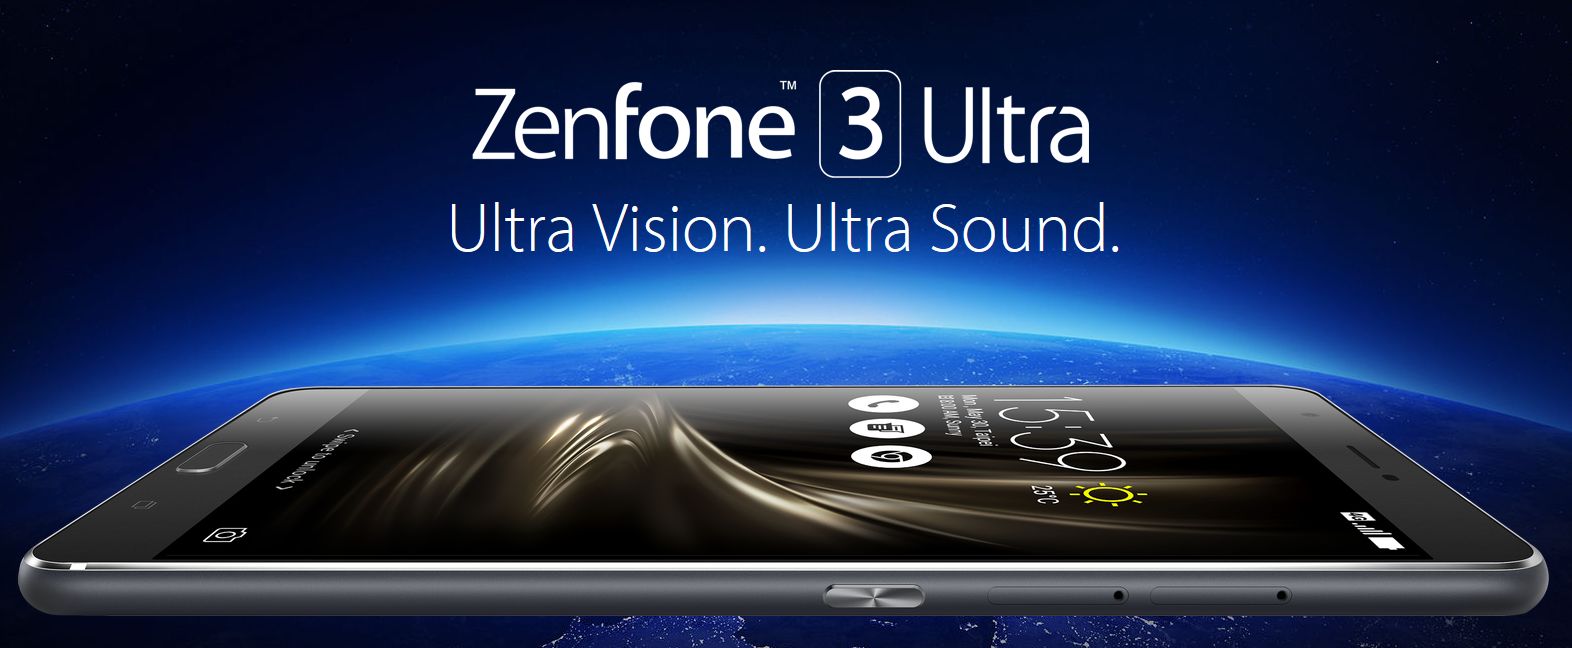 zenfone-3-ultra-zu680kl